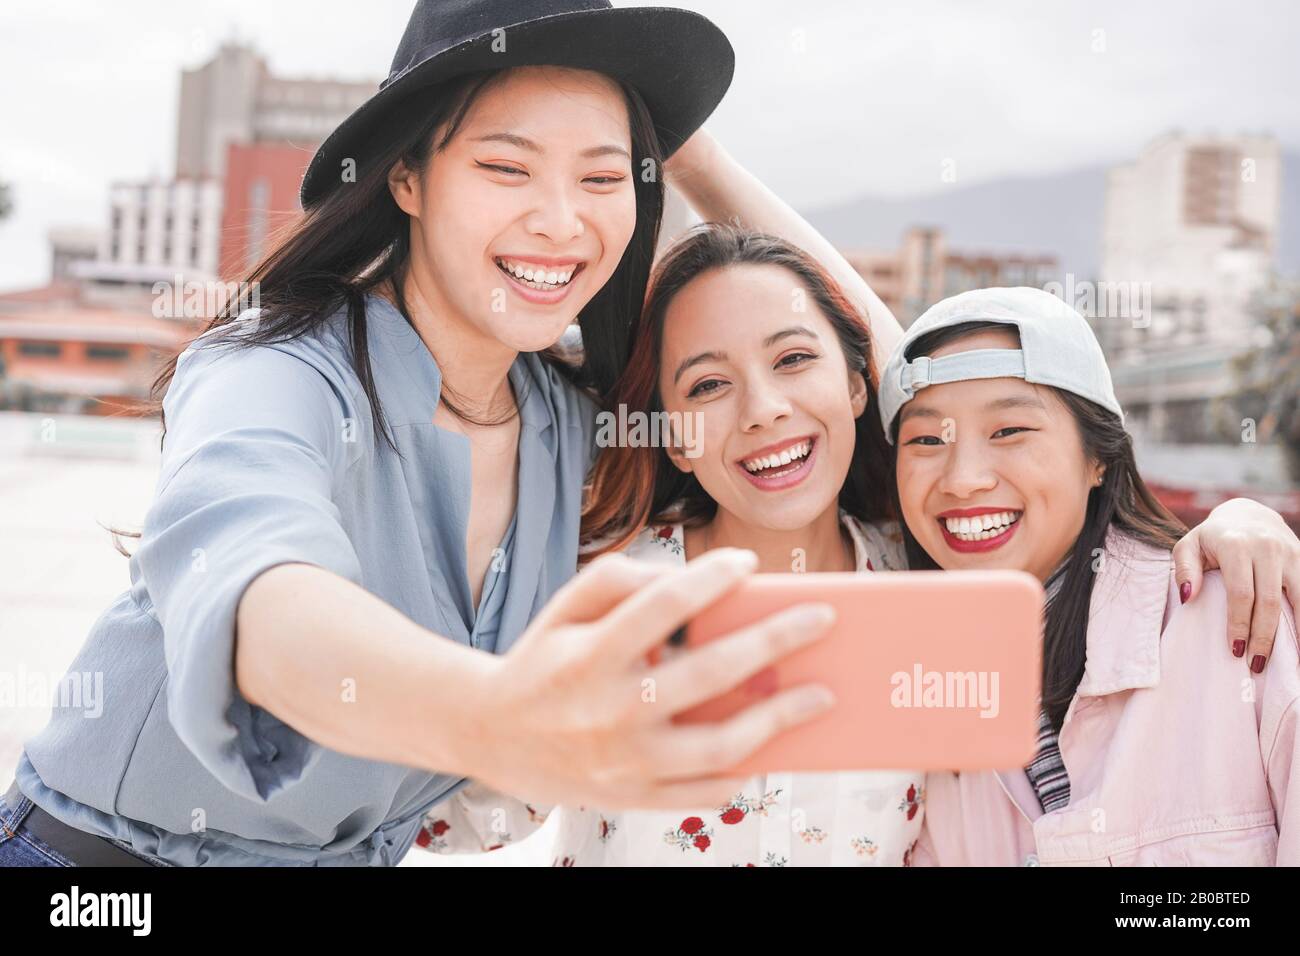 Trendige asiatische Mädchen, die Videogeschichte für Social Network App im Freien machen - Junge Frauen, die Spaß haben, selfie zu nehmen - neue Technologietrends und Freund Stockfoto